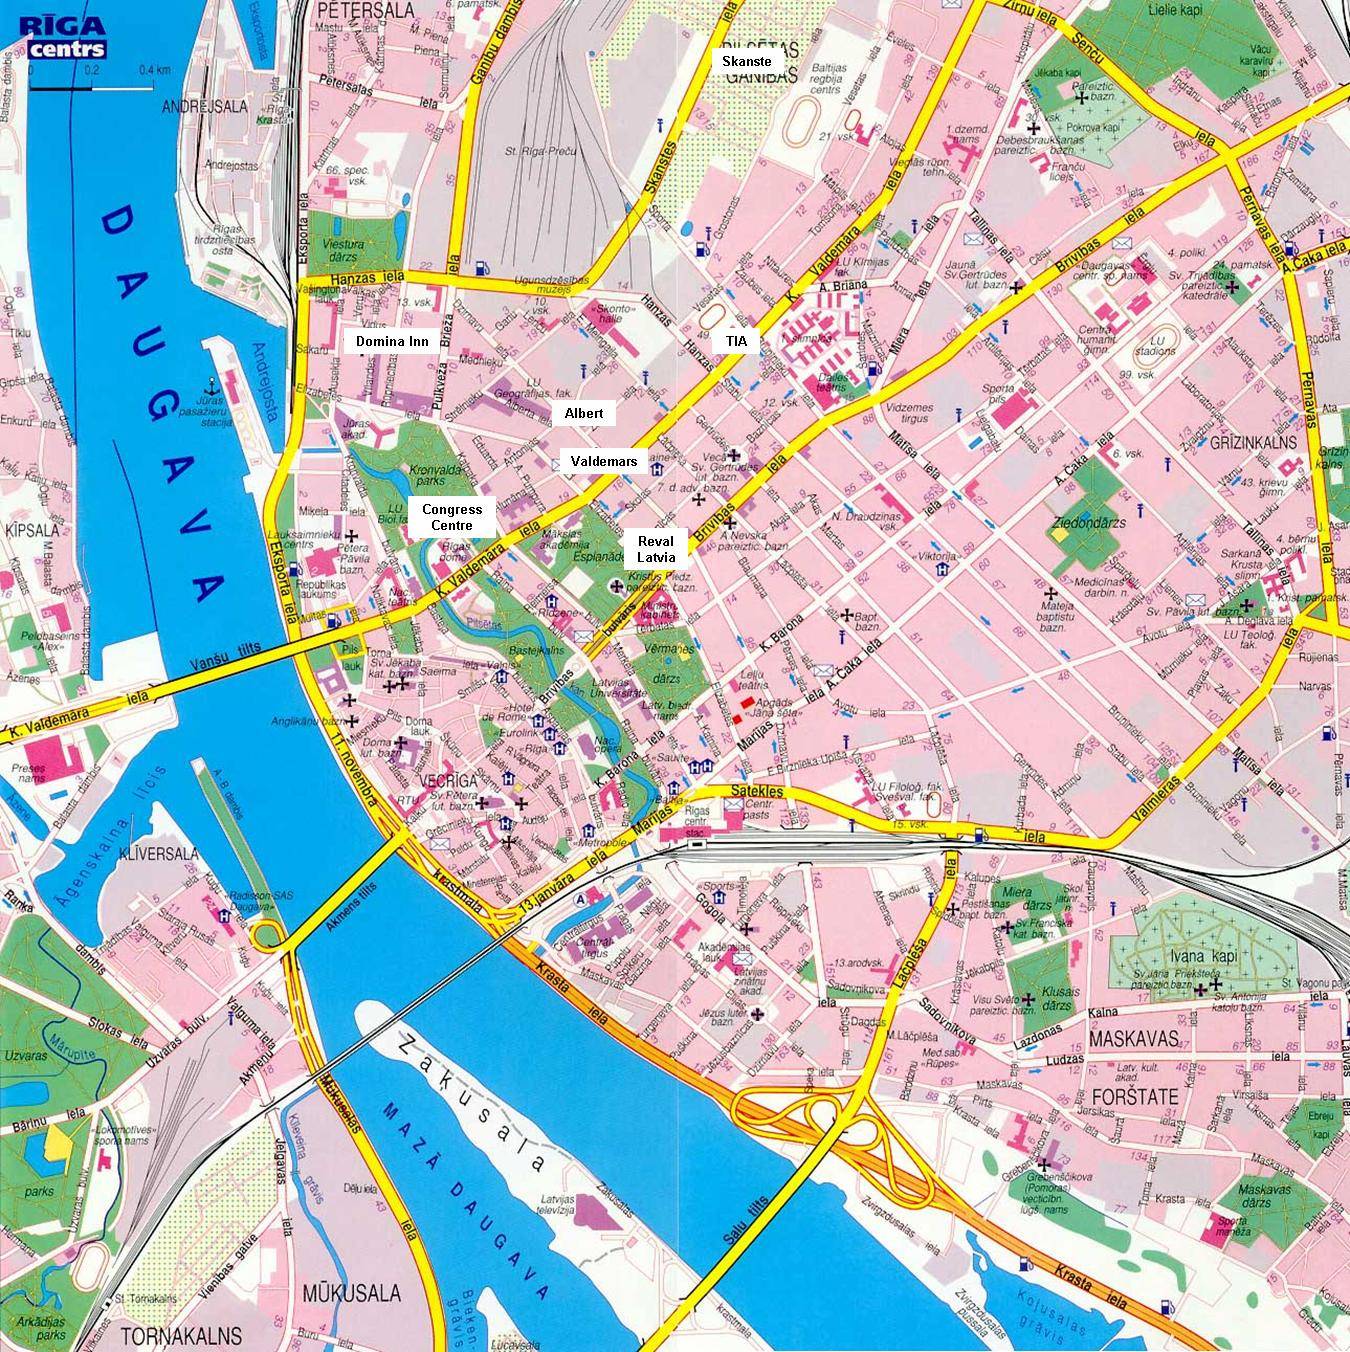 Stadtplan von Riga | Detaillierte gedruckte Karten von Riga, Lettland